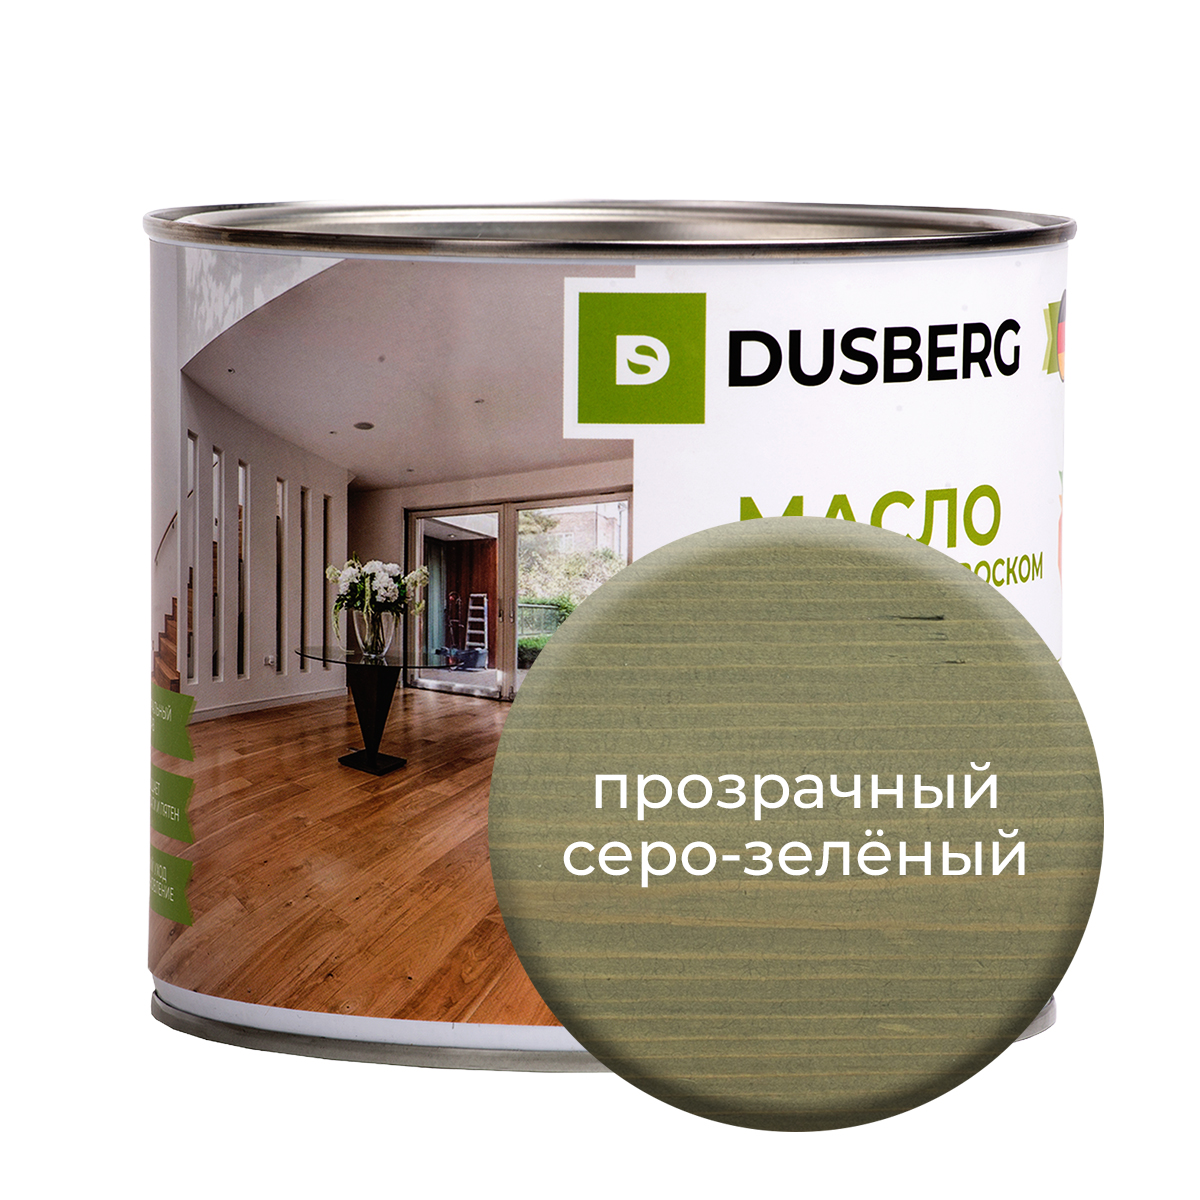 Масло Dusberg для стен на бесцветной основе, 750 мл Прозрачный серо-зеленый масло dusberg для дерева на бесцветной основе 750 мл палисандр